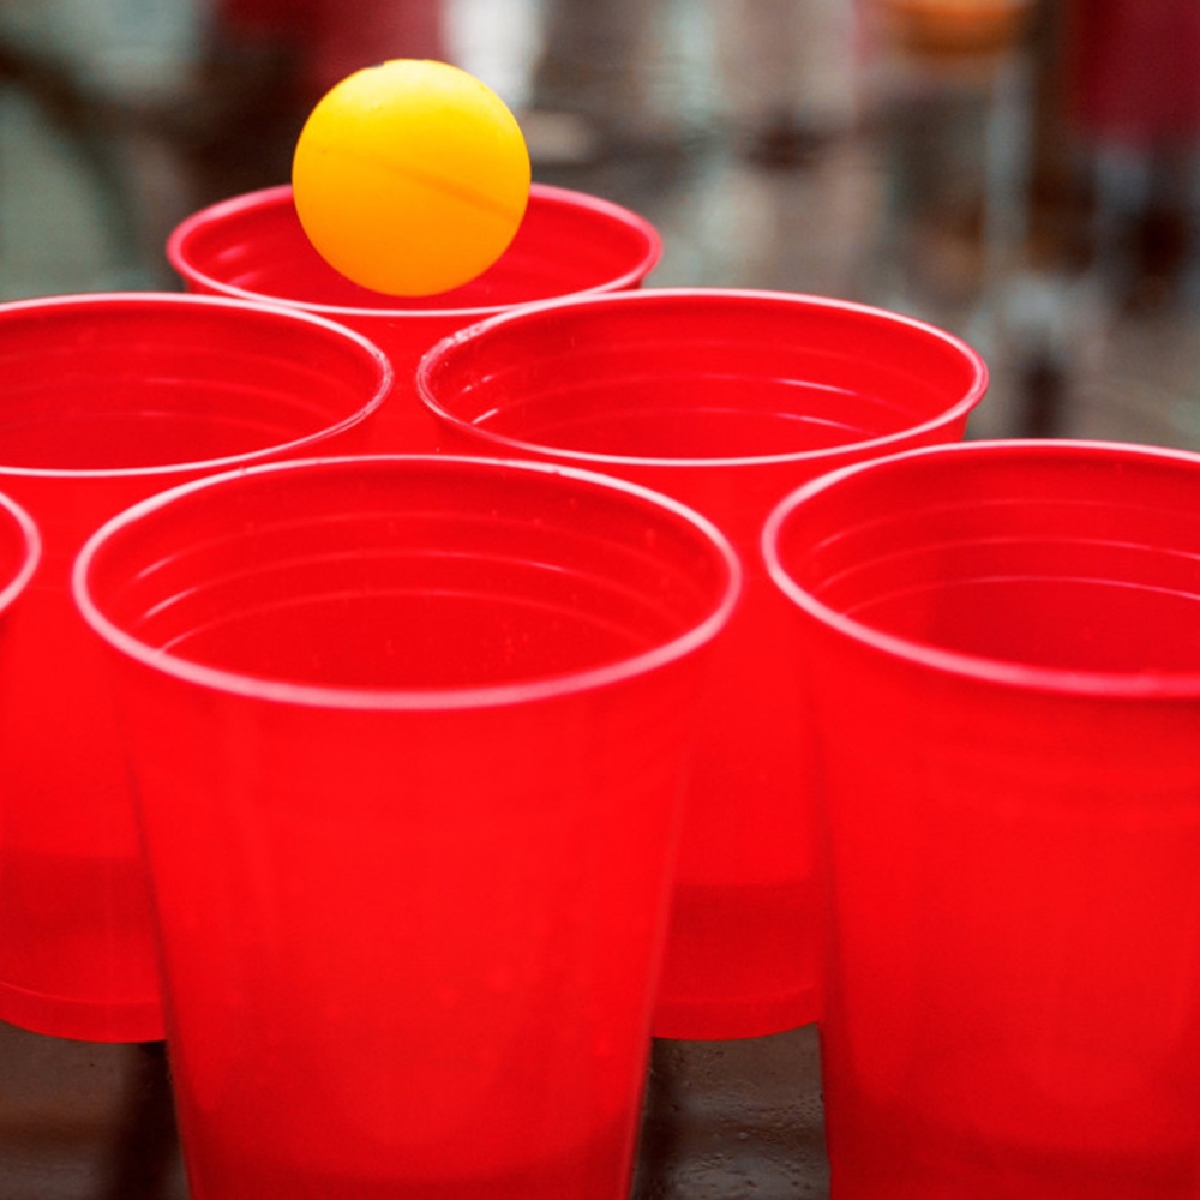 despedida de soltero juego tomando bebidas 2 Beer pong mesa Basket Pong 